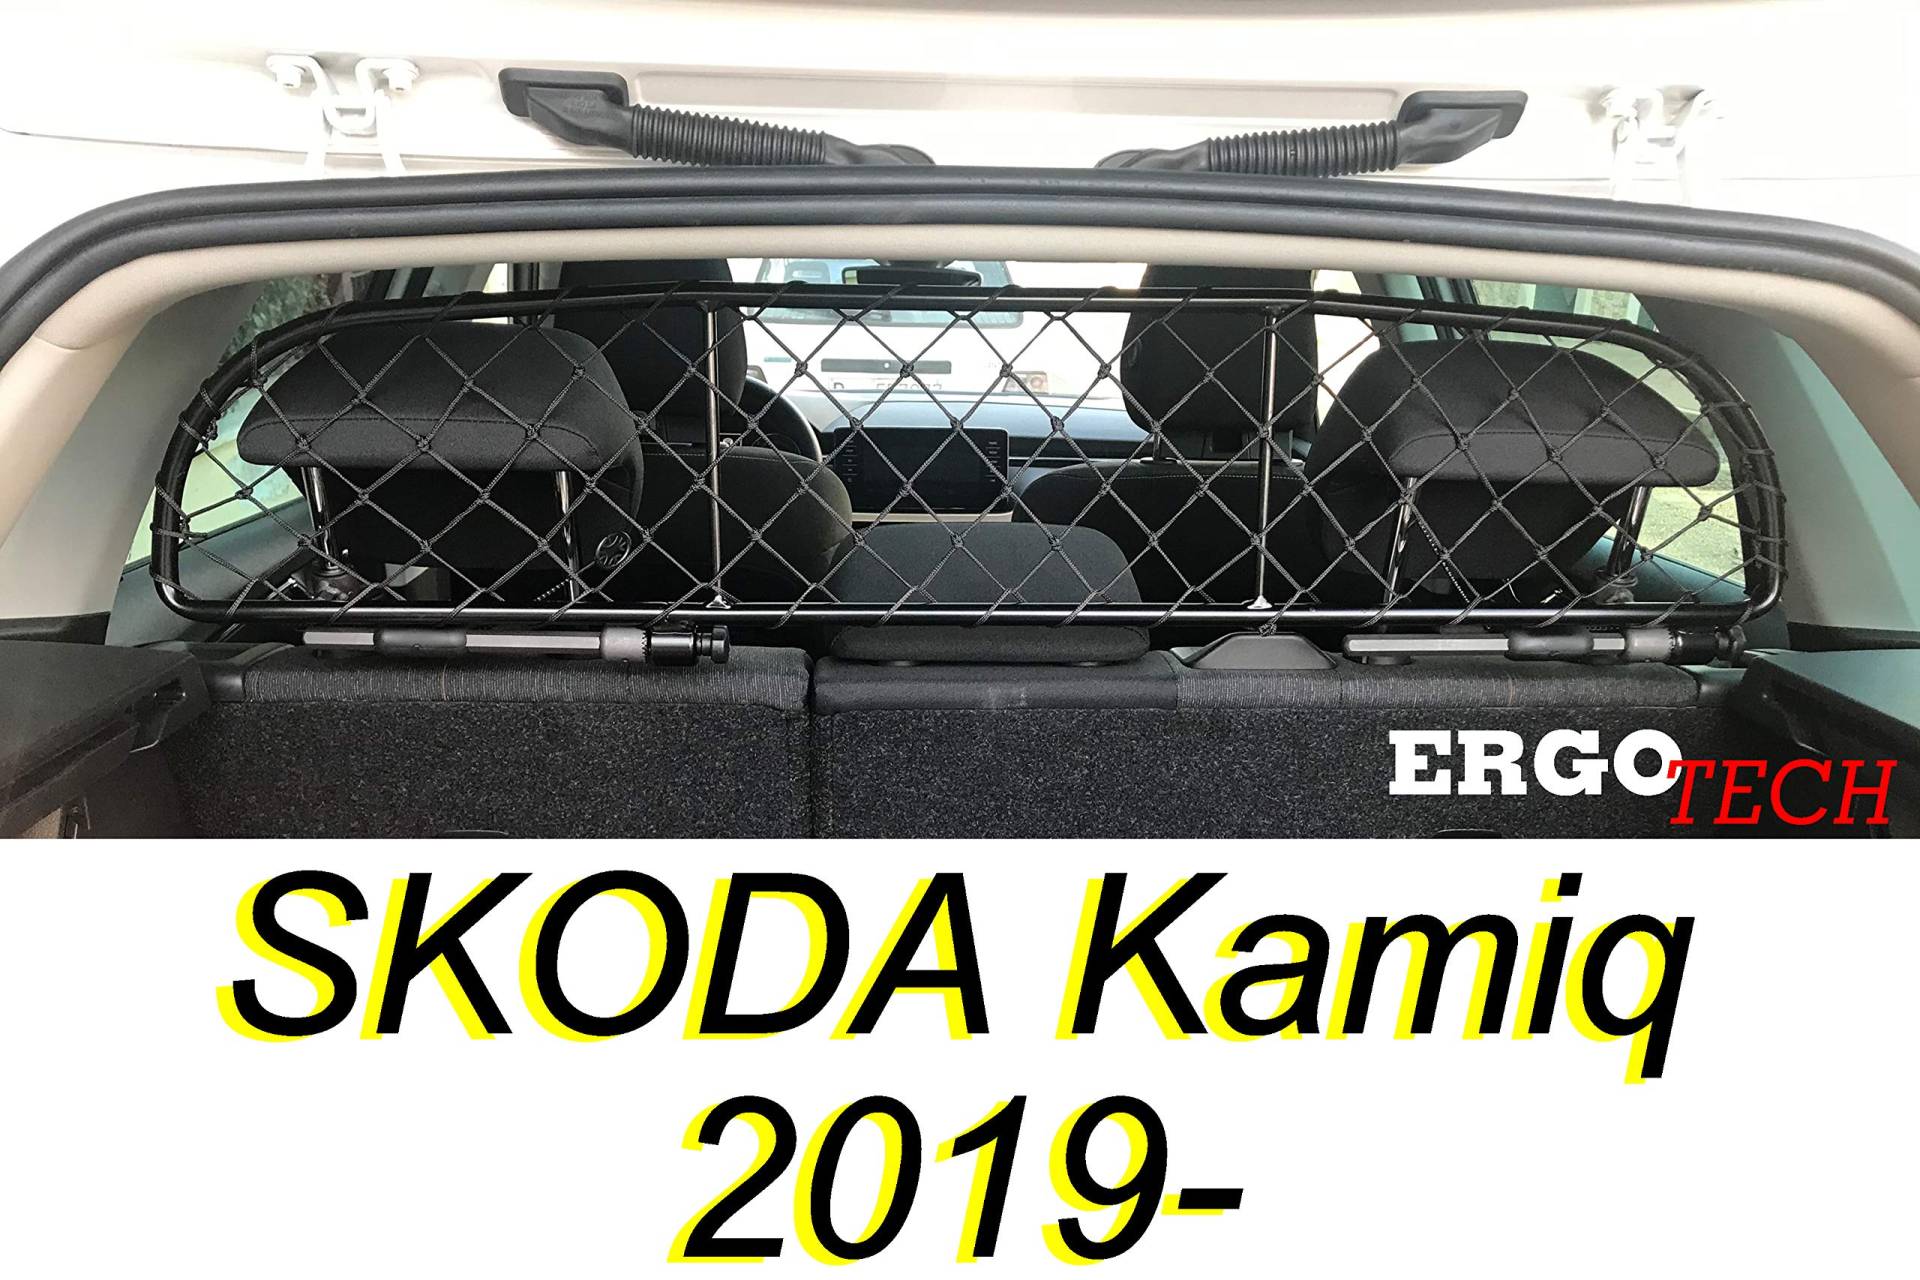 ERGOTECH Trennnetz Trenngitter kompatibel mit SKODA Kamiq (ab BJ 2019), RDA65-XXS8, für Hunde und Gepäck von ERGOTECH